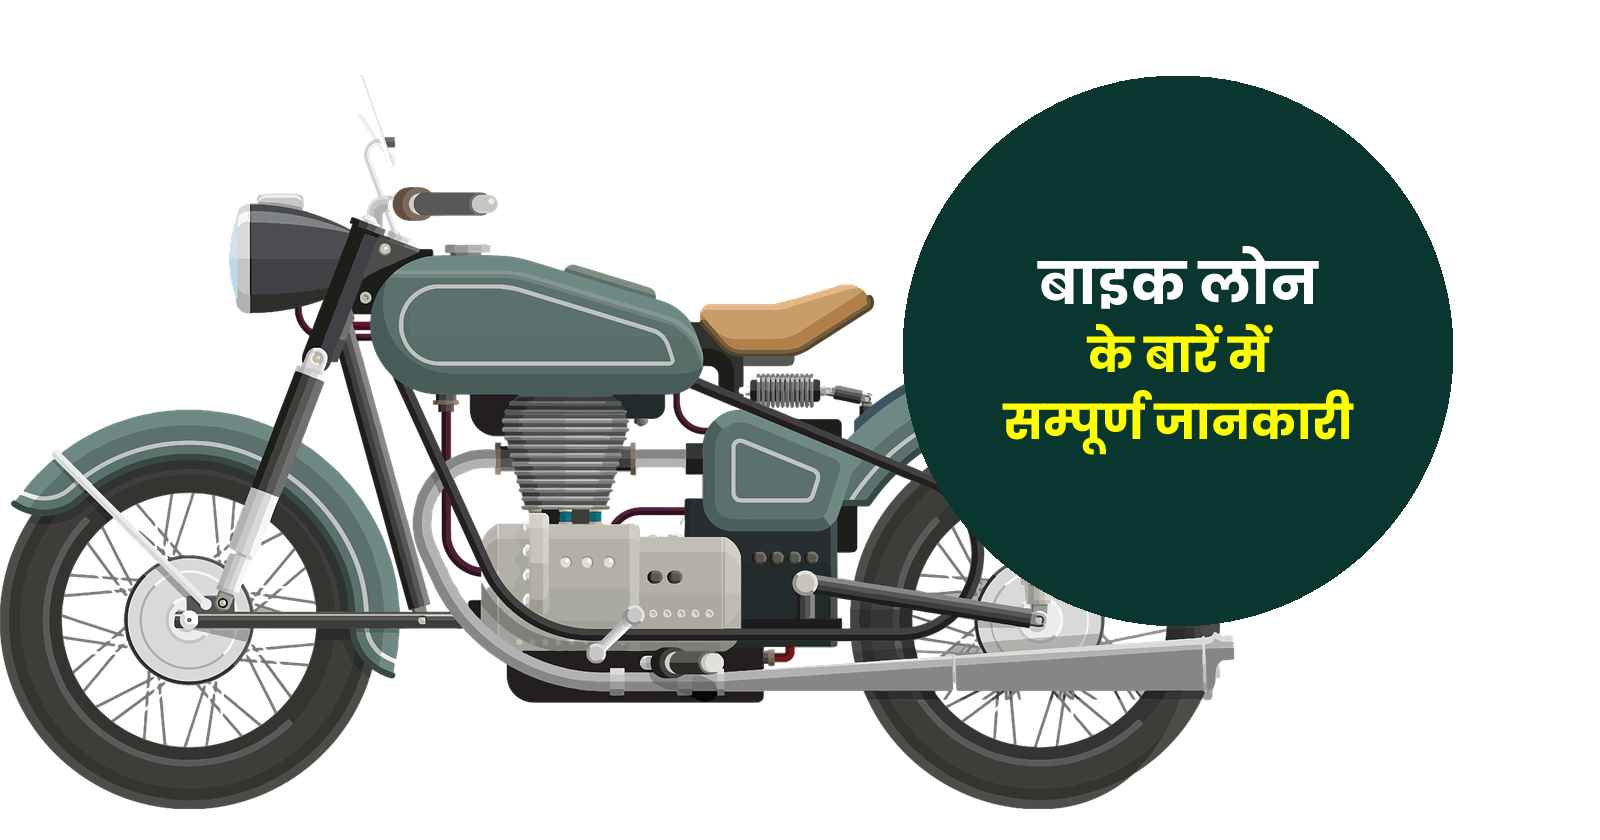 Bike Loan Details in Hindi